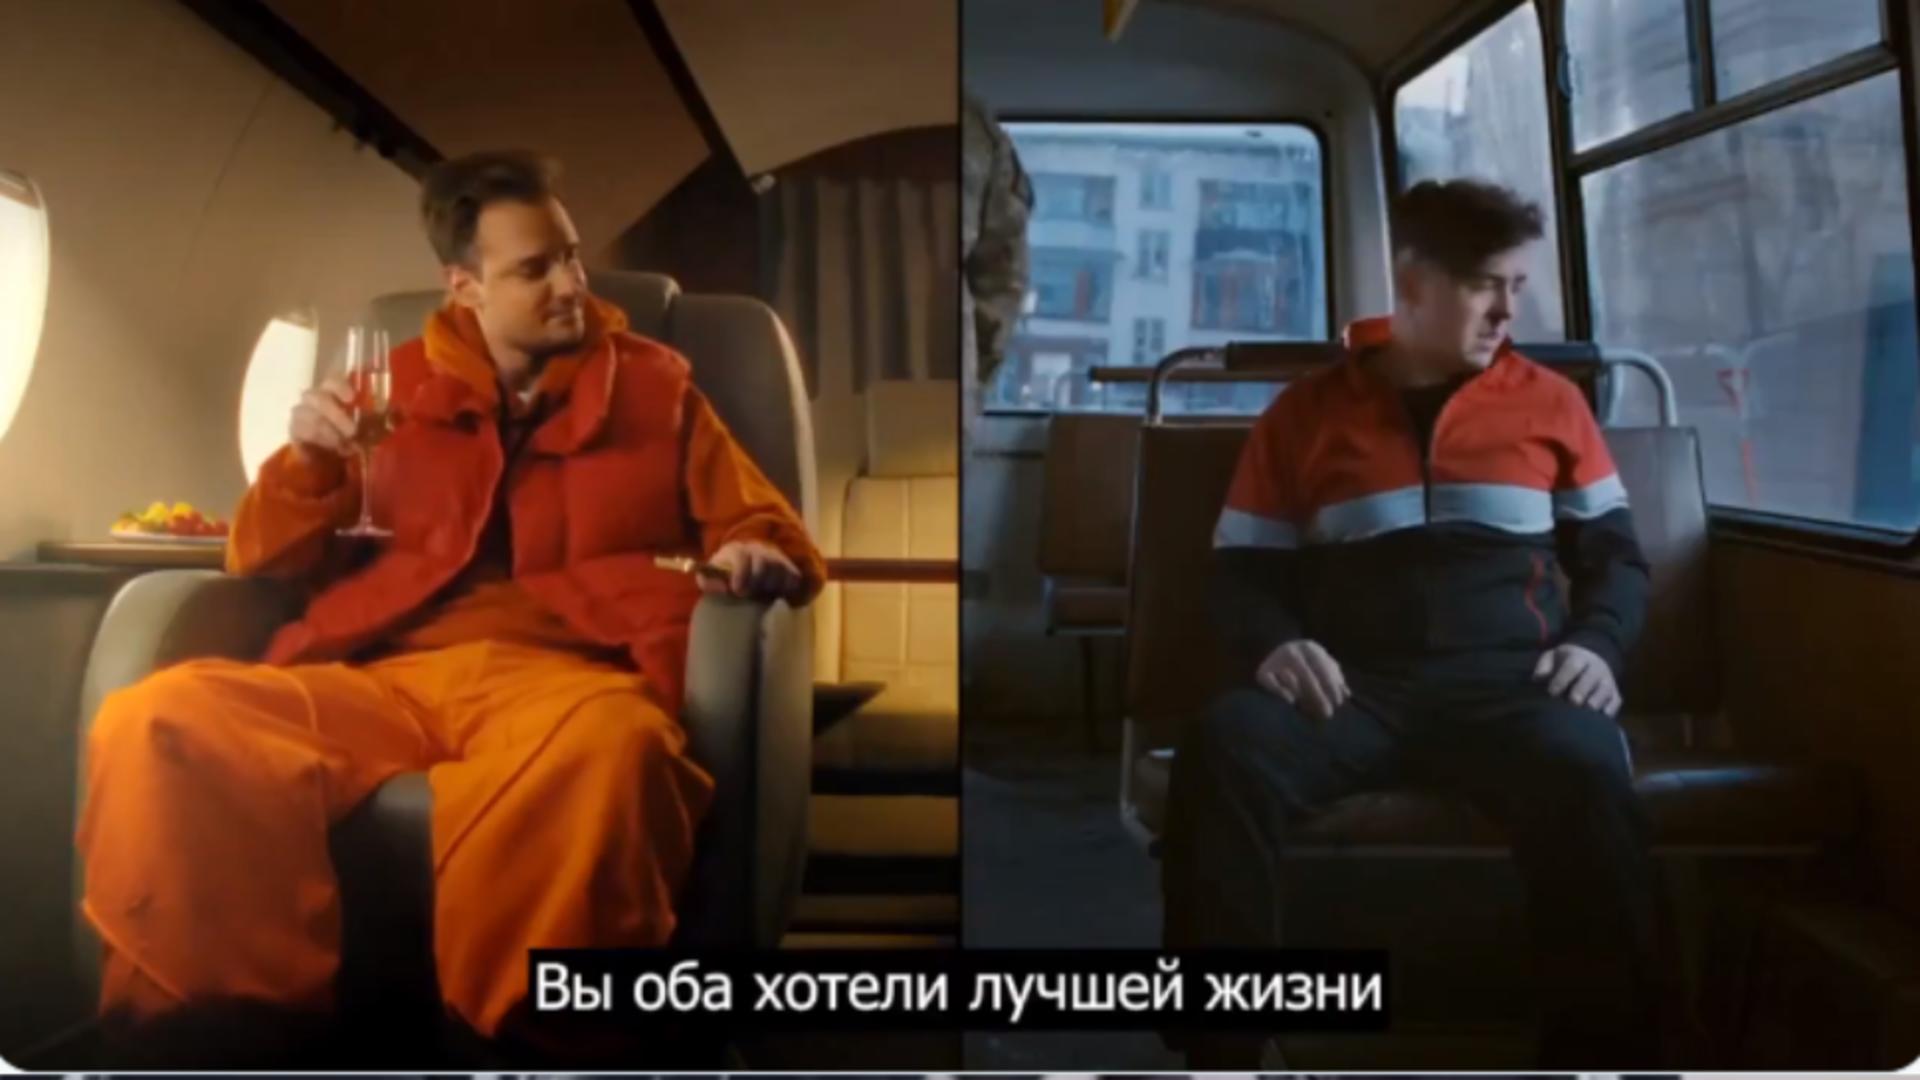 Buget uriaș și actori preofesioniști pentru videoclipul „Fiul lui este în elită, iar tu ești carne de tun”, promovat de Kremlin / Captură video